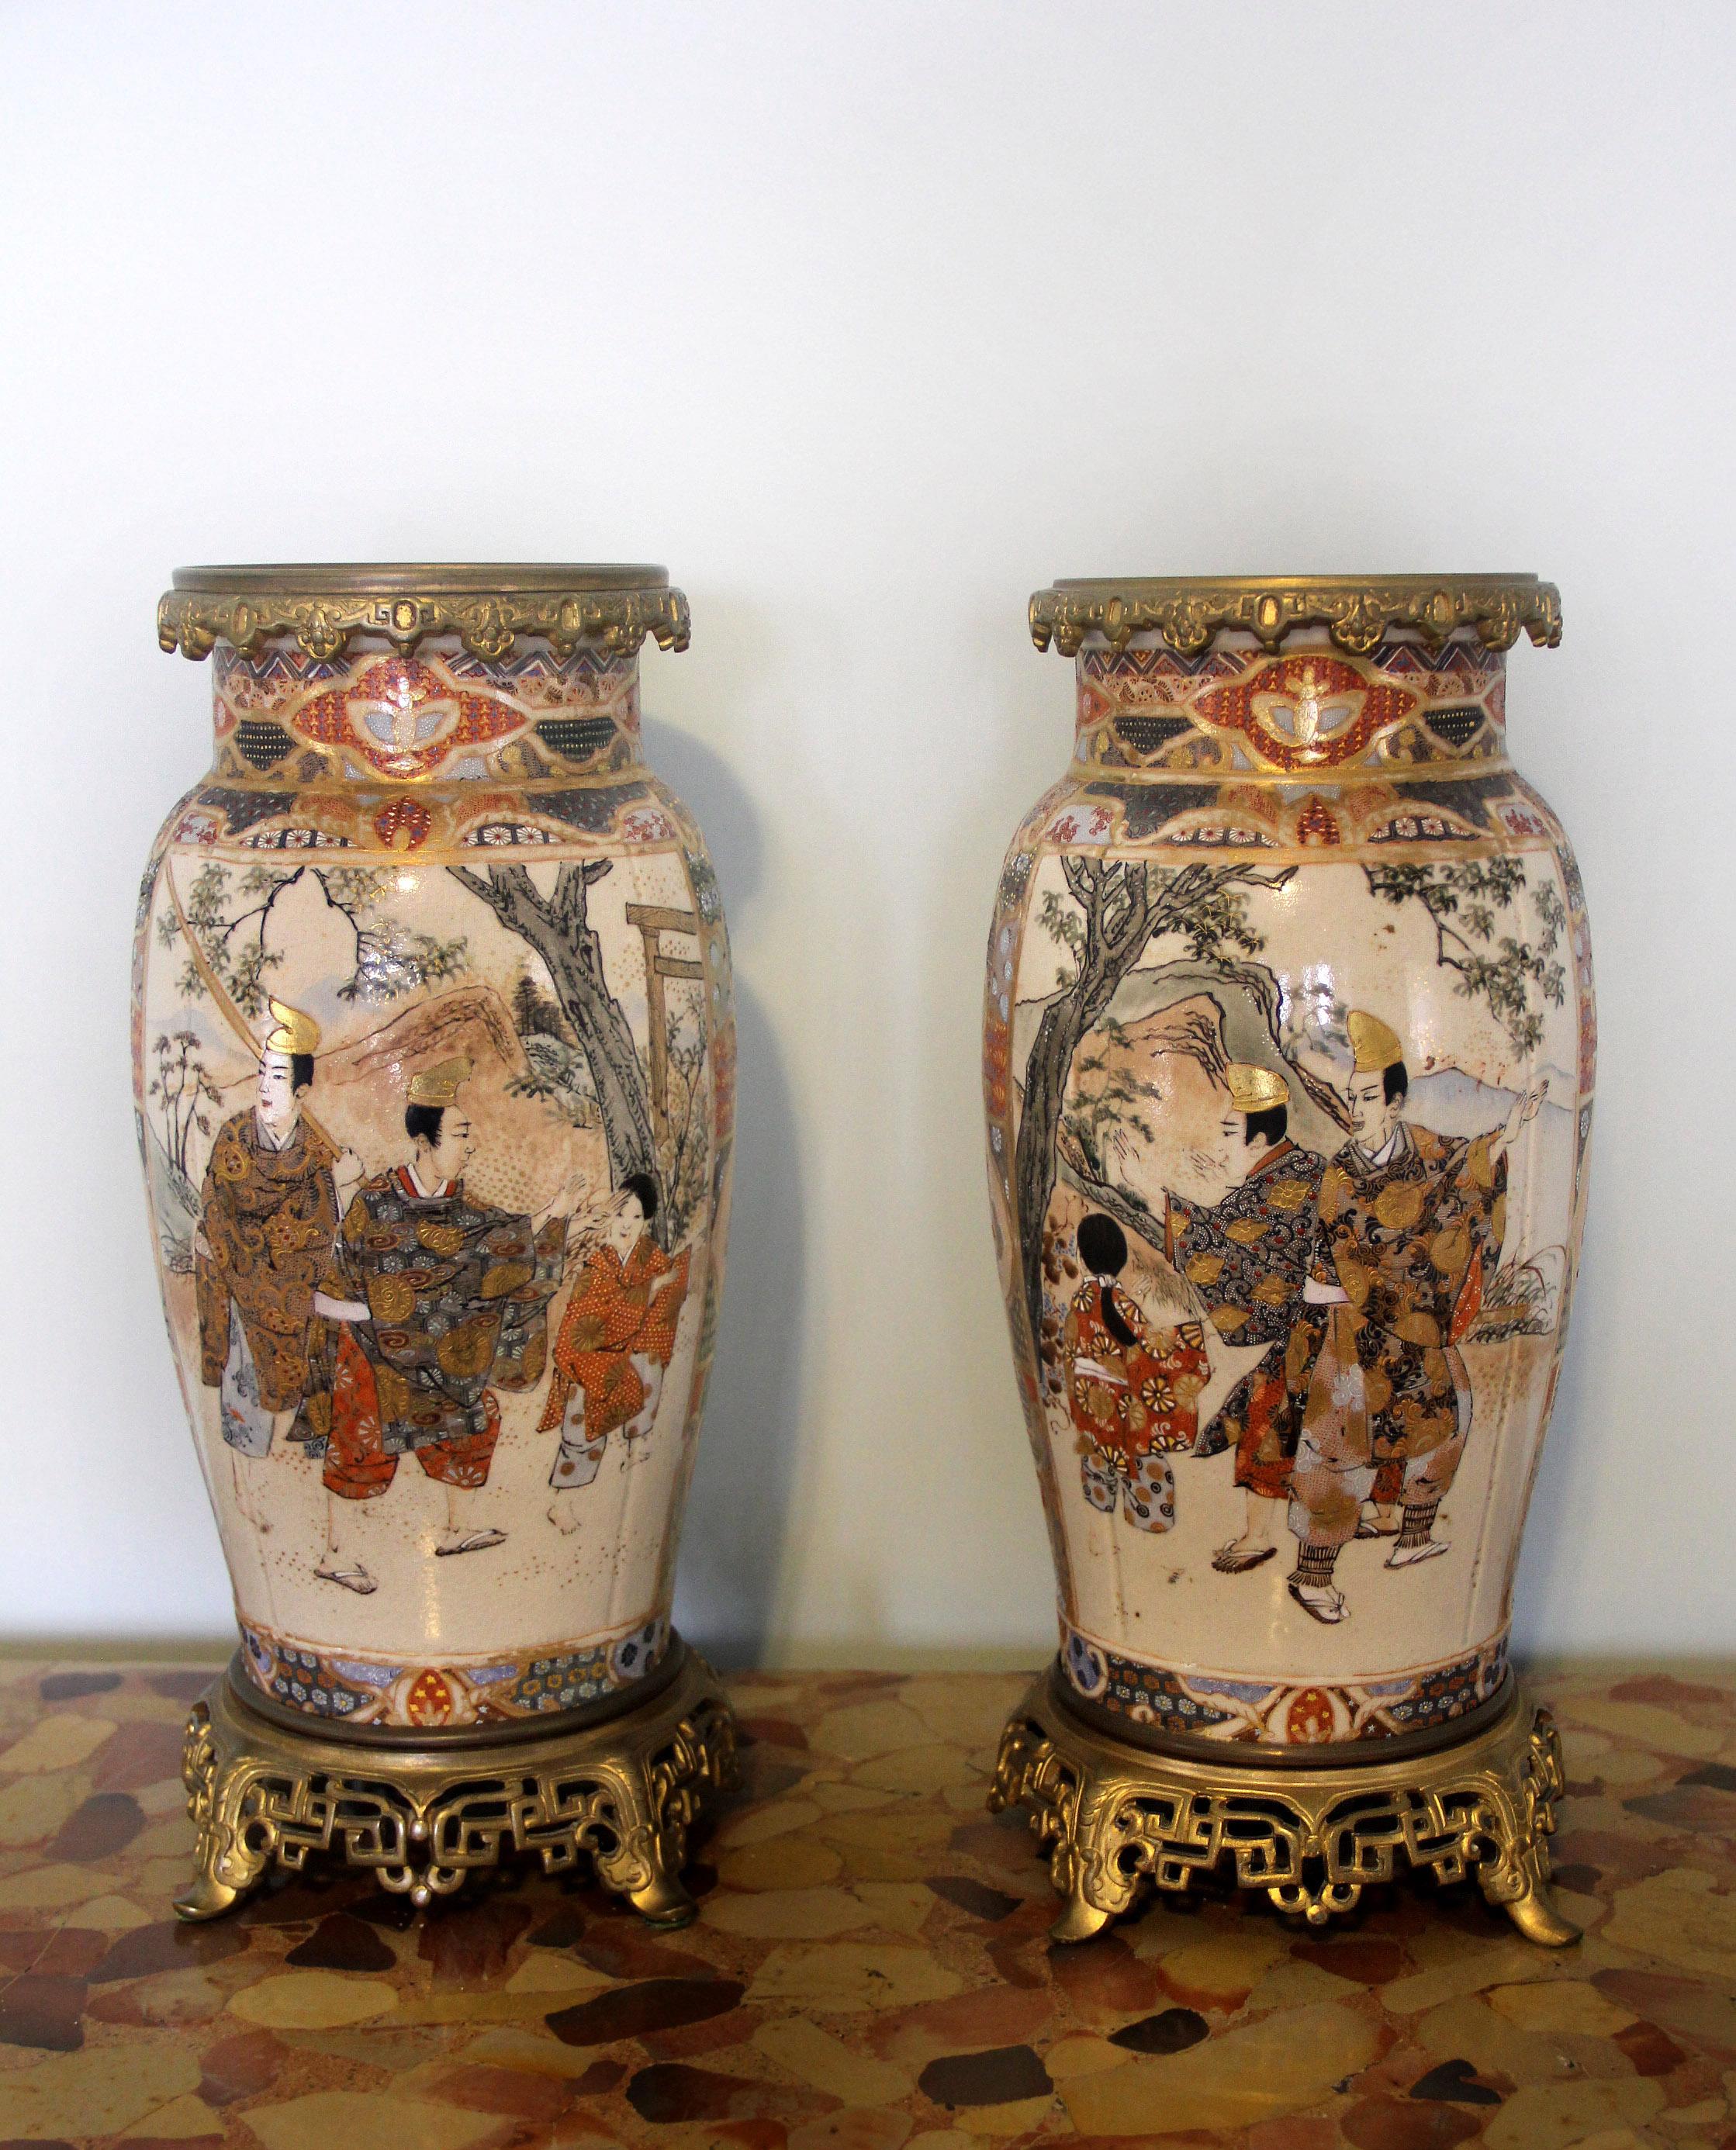 Ein sehr schönes Paar Vasen aus vergoldeter Bronze und japanischem Satsuma-Porzellan aus dem späten 19.

Gemalte Szenen von Männern, Frauen und Kindern in Landschaften und in der Freizeit, umgeben von sehr feinen erhabenen Goldmotiven, auf einem